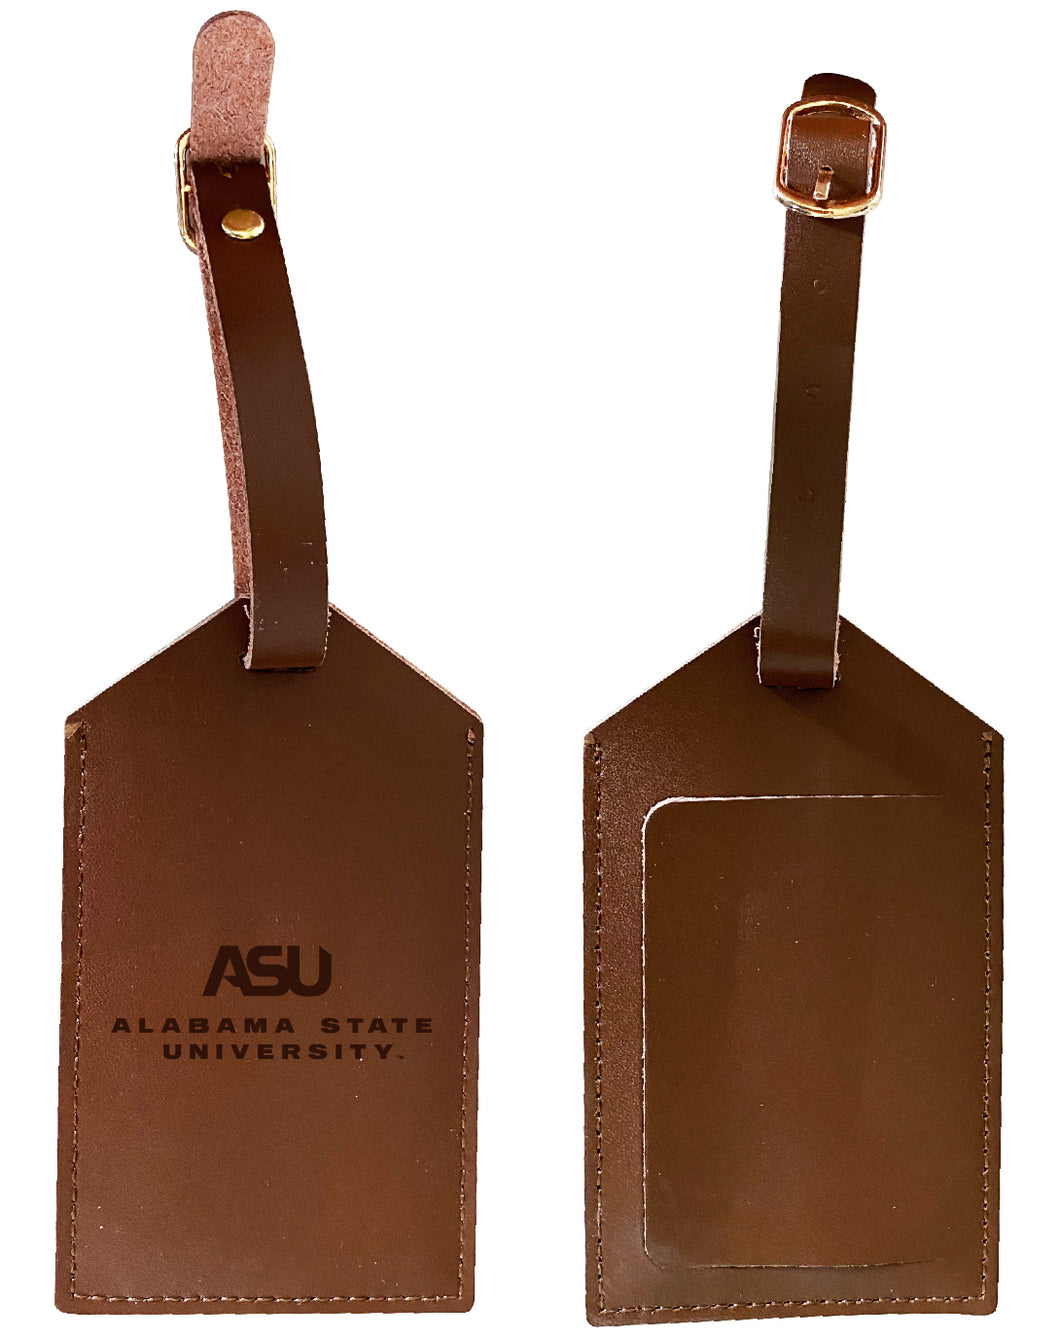 Elegant Alabama State University NCAA Leather Luggage Tag with Engraved Logo